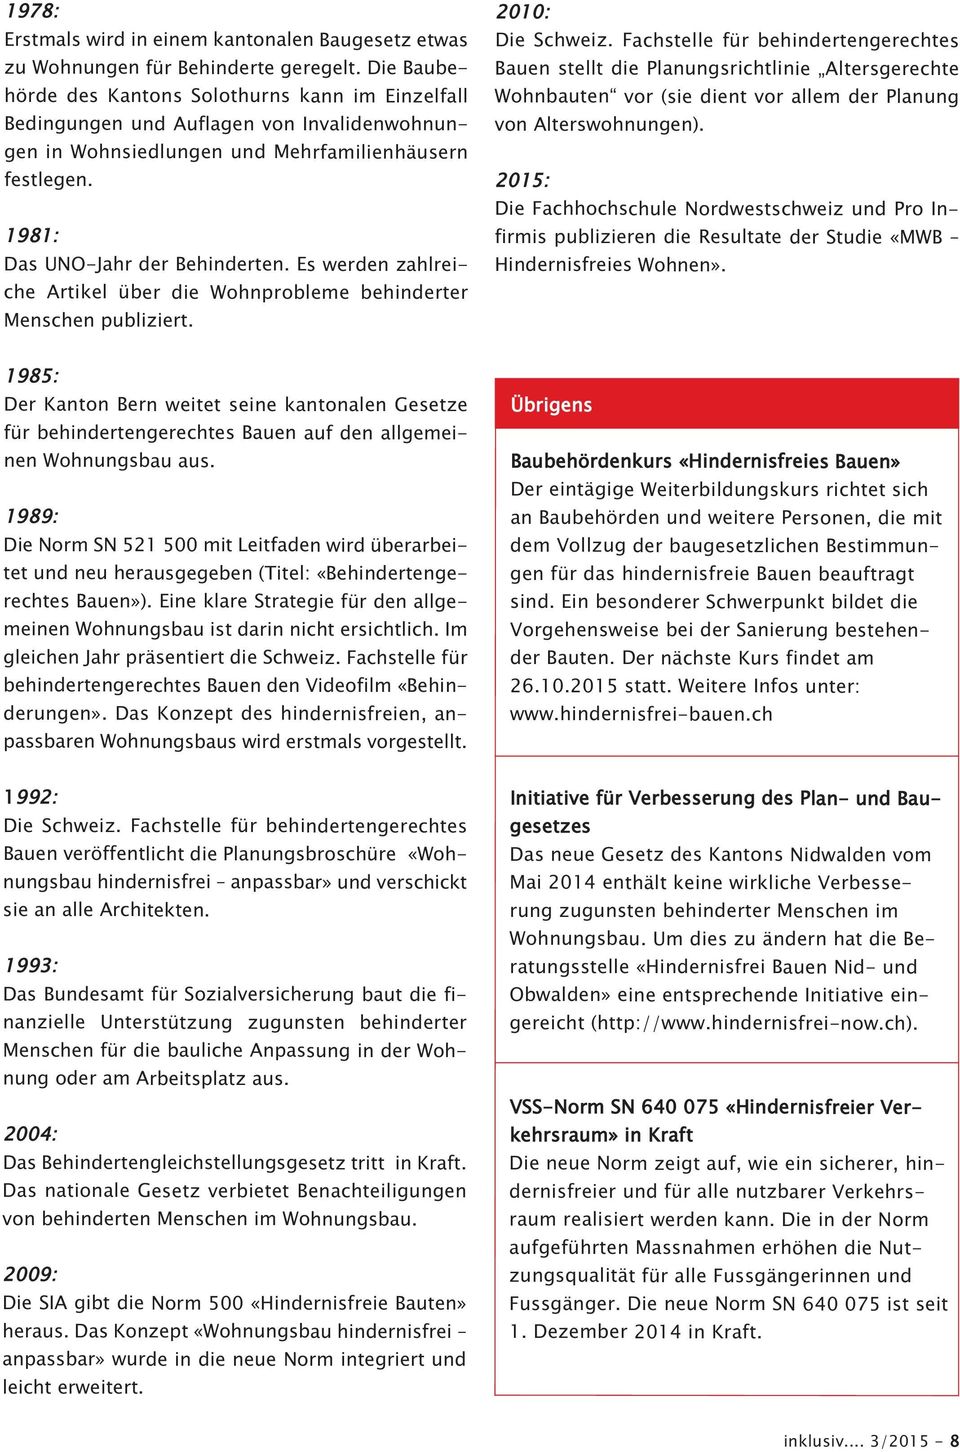 Es werden zahlreiche Artikel über die Wohnprobleme behinderter Menschen publiziert. 2010: Die Schweiz.